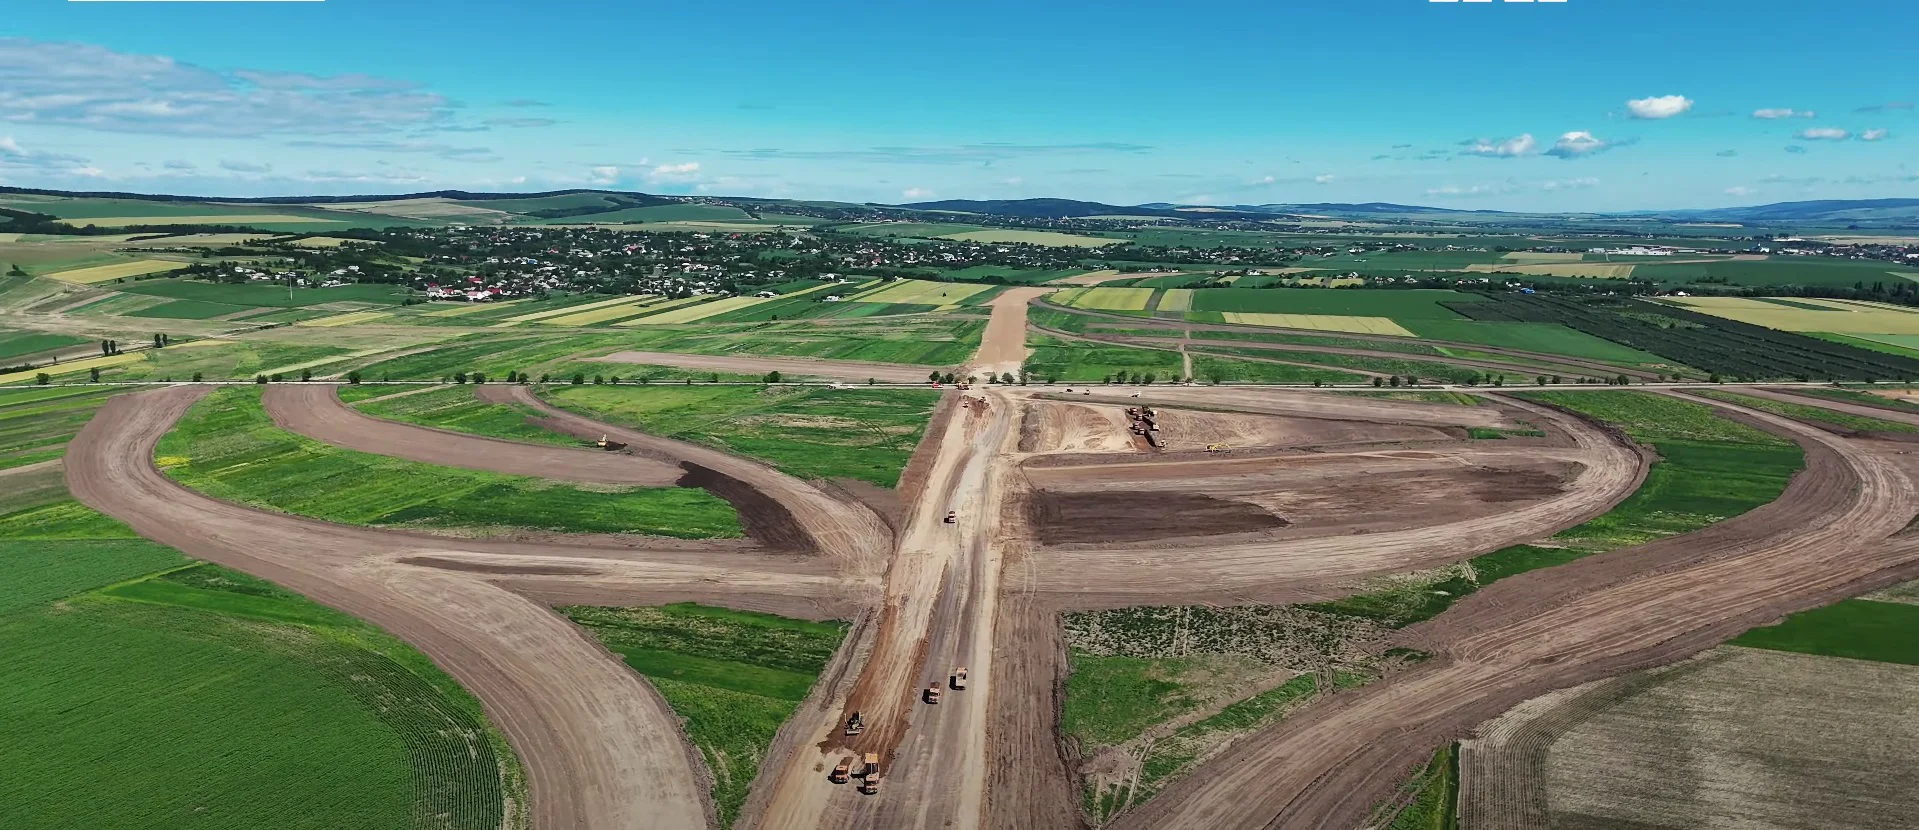 Lucrările la Autostrada Moldovei avansează. Noi imagini filmate cu drona